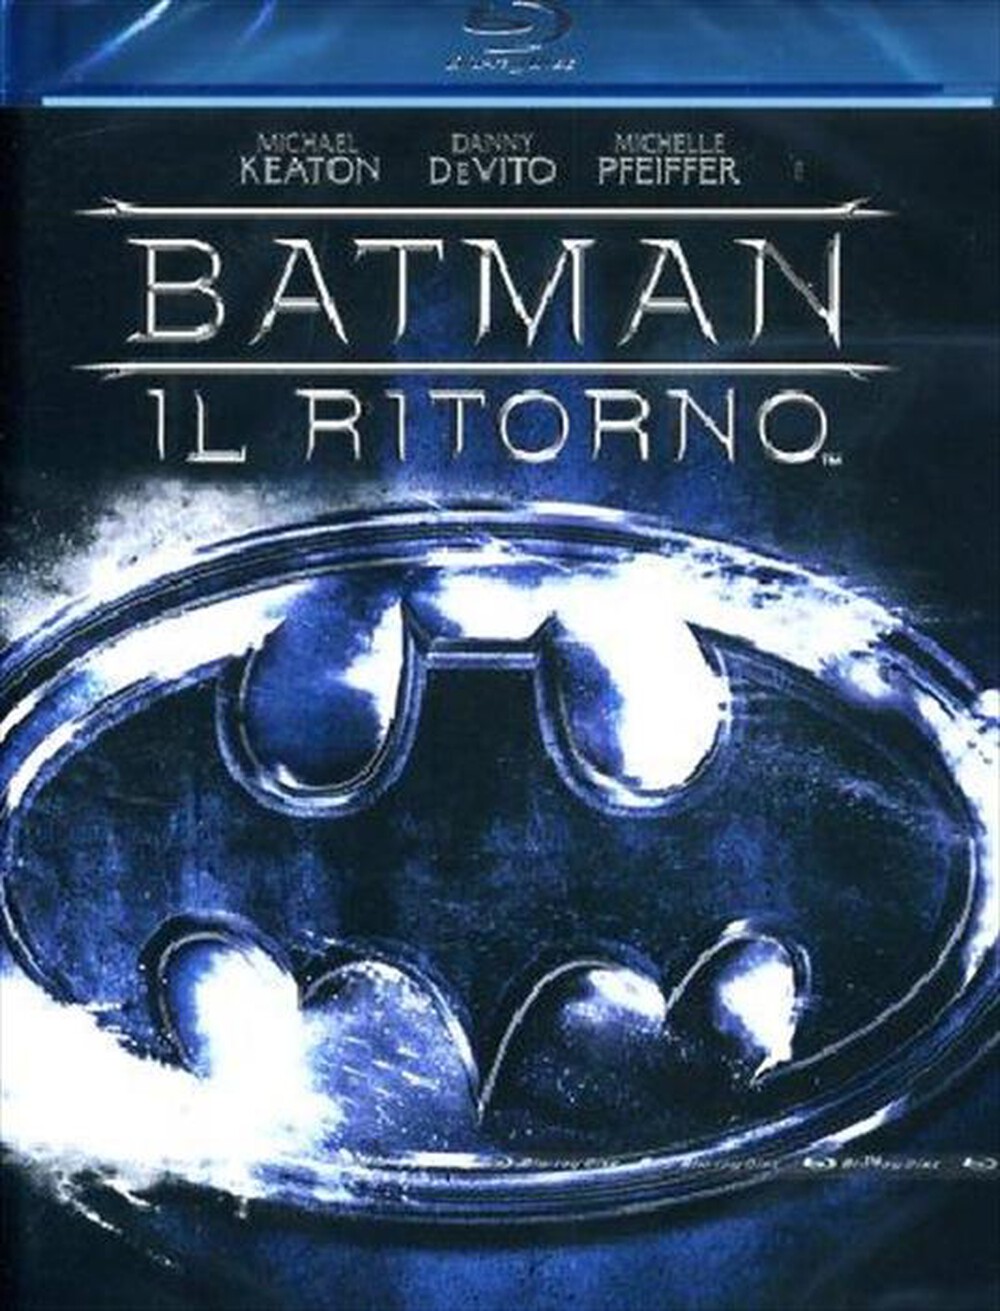 "WARNER HOME VIDEO - Batman Il Ritorno - "